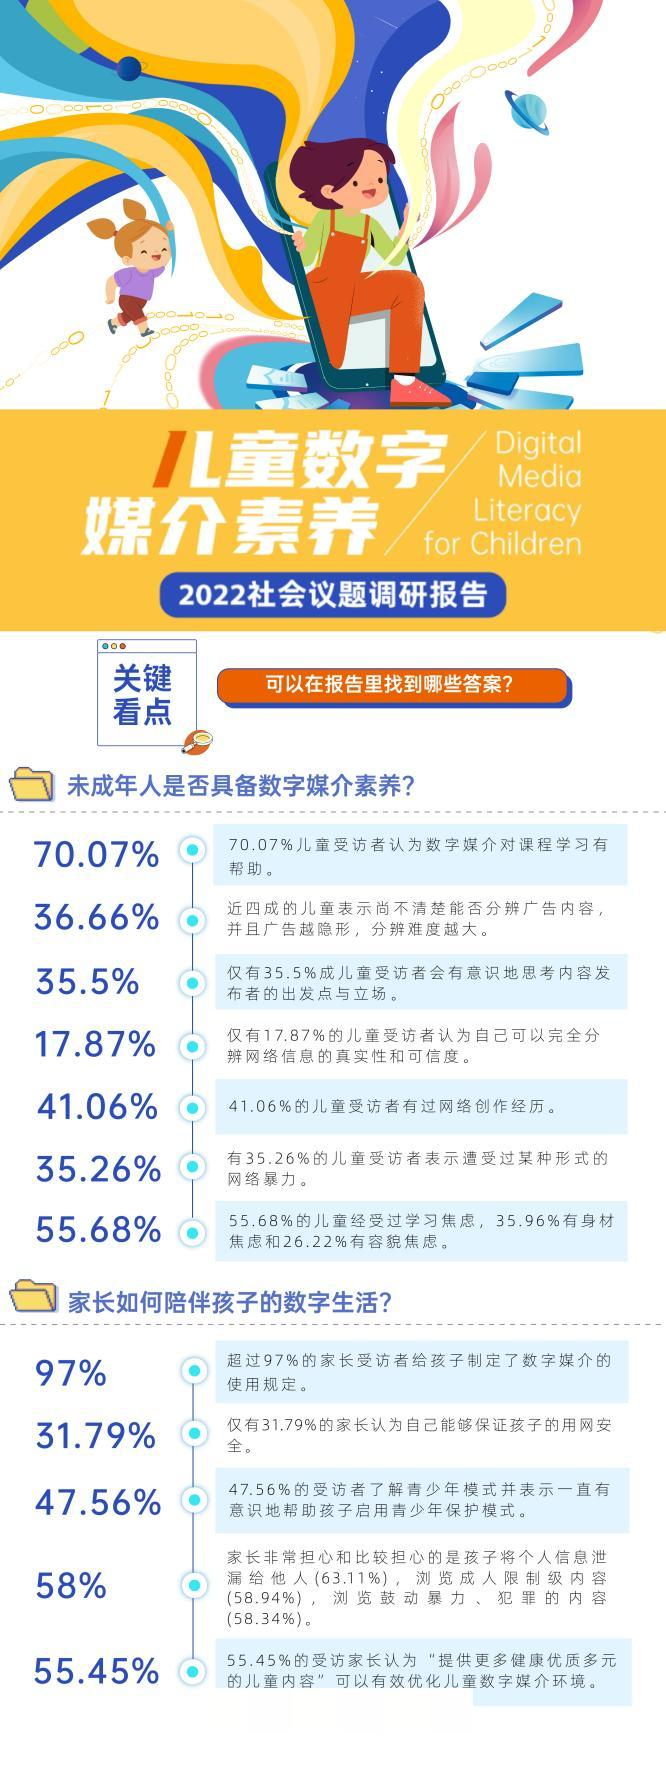 中国儿童数字媒介素养调研报告发布，探索Web3.0时代的儿童友好之路